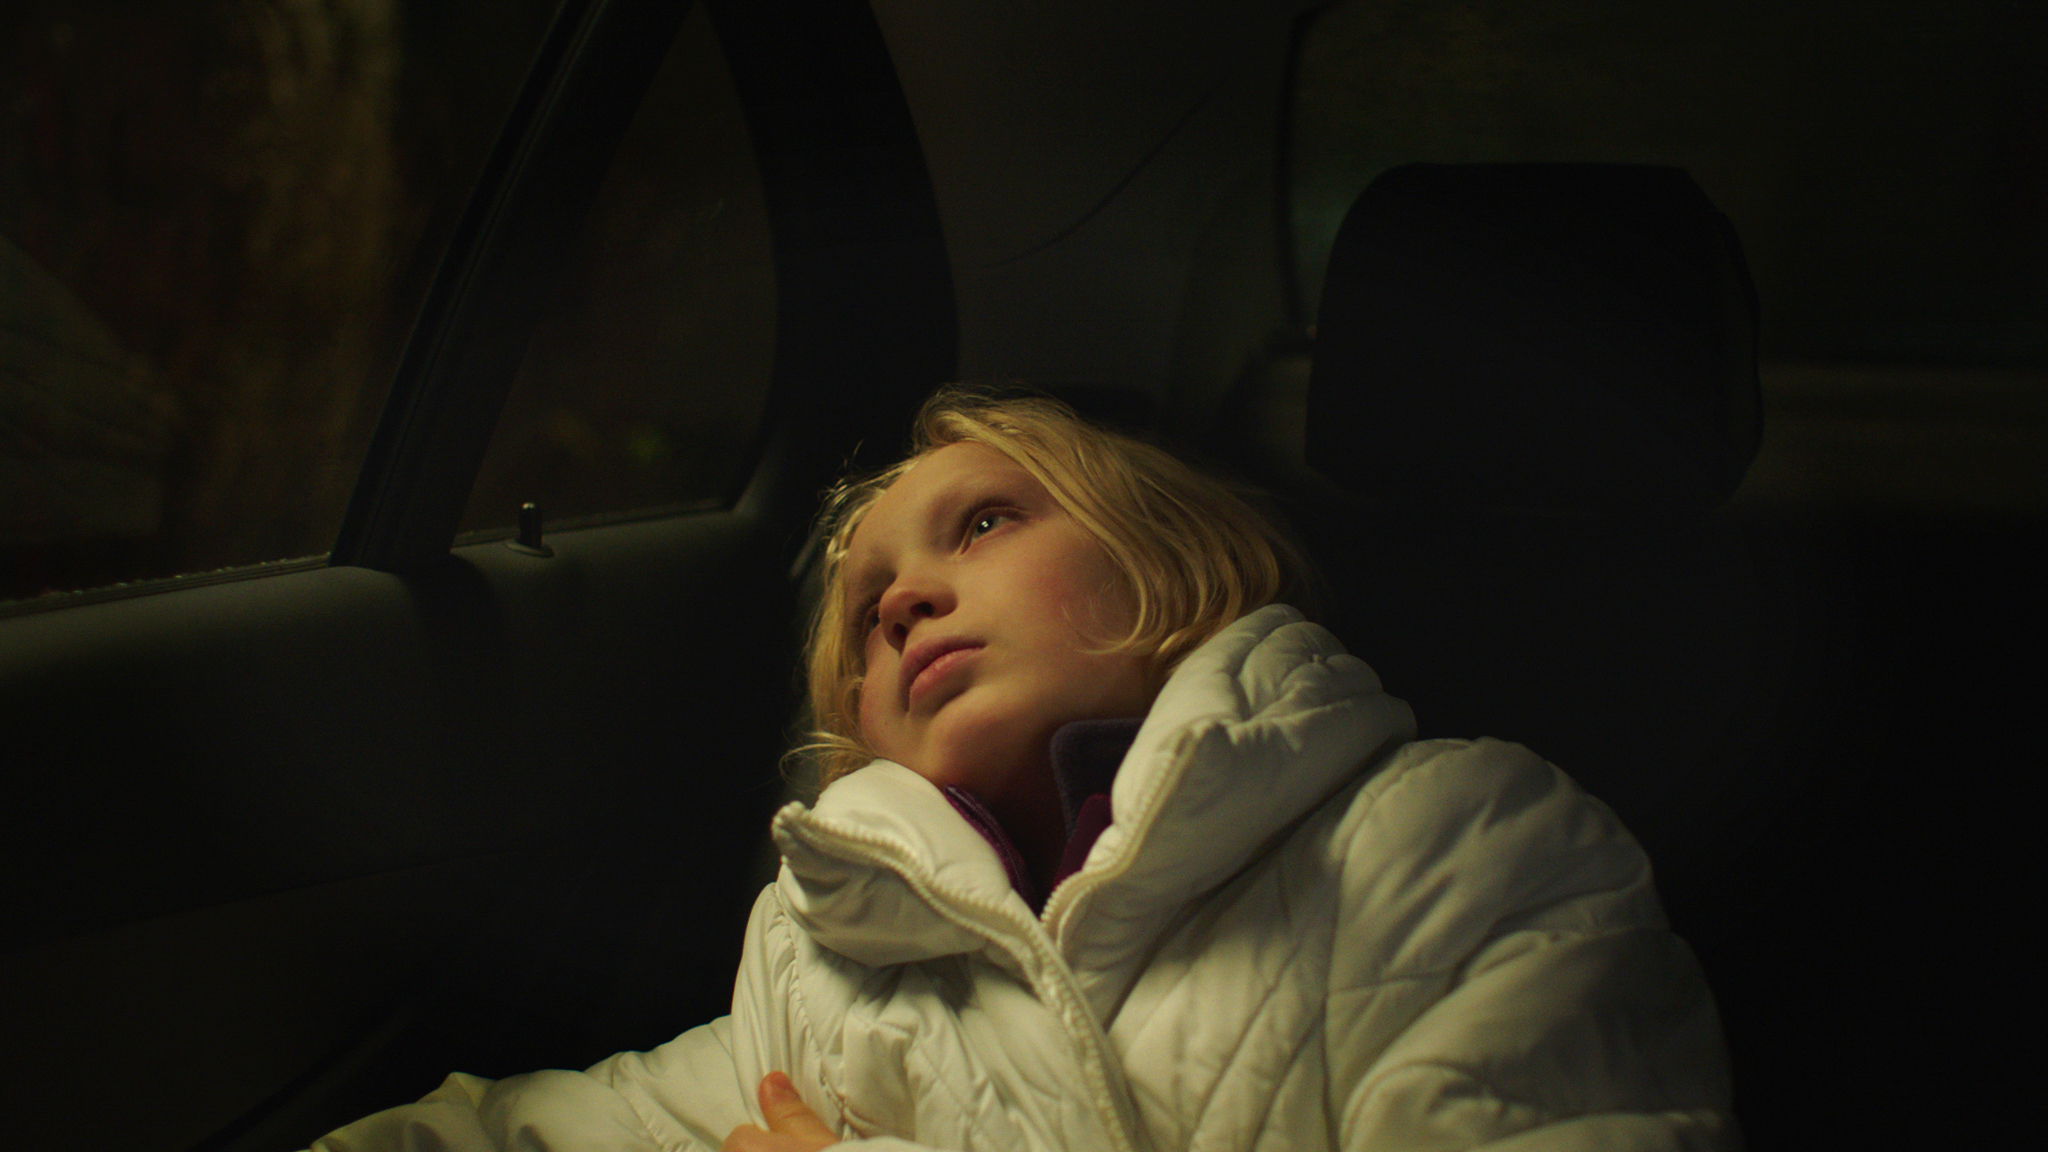 Kuvassa on nuori Helena Zengel, joka makaa puoliksi auton takapenkillä ja katsoo autosta ulos.  Hänellä vaaleat puolipitkät hiukset ja päällään valkoinen toppatakki.  Tausta on tumma.   